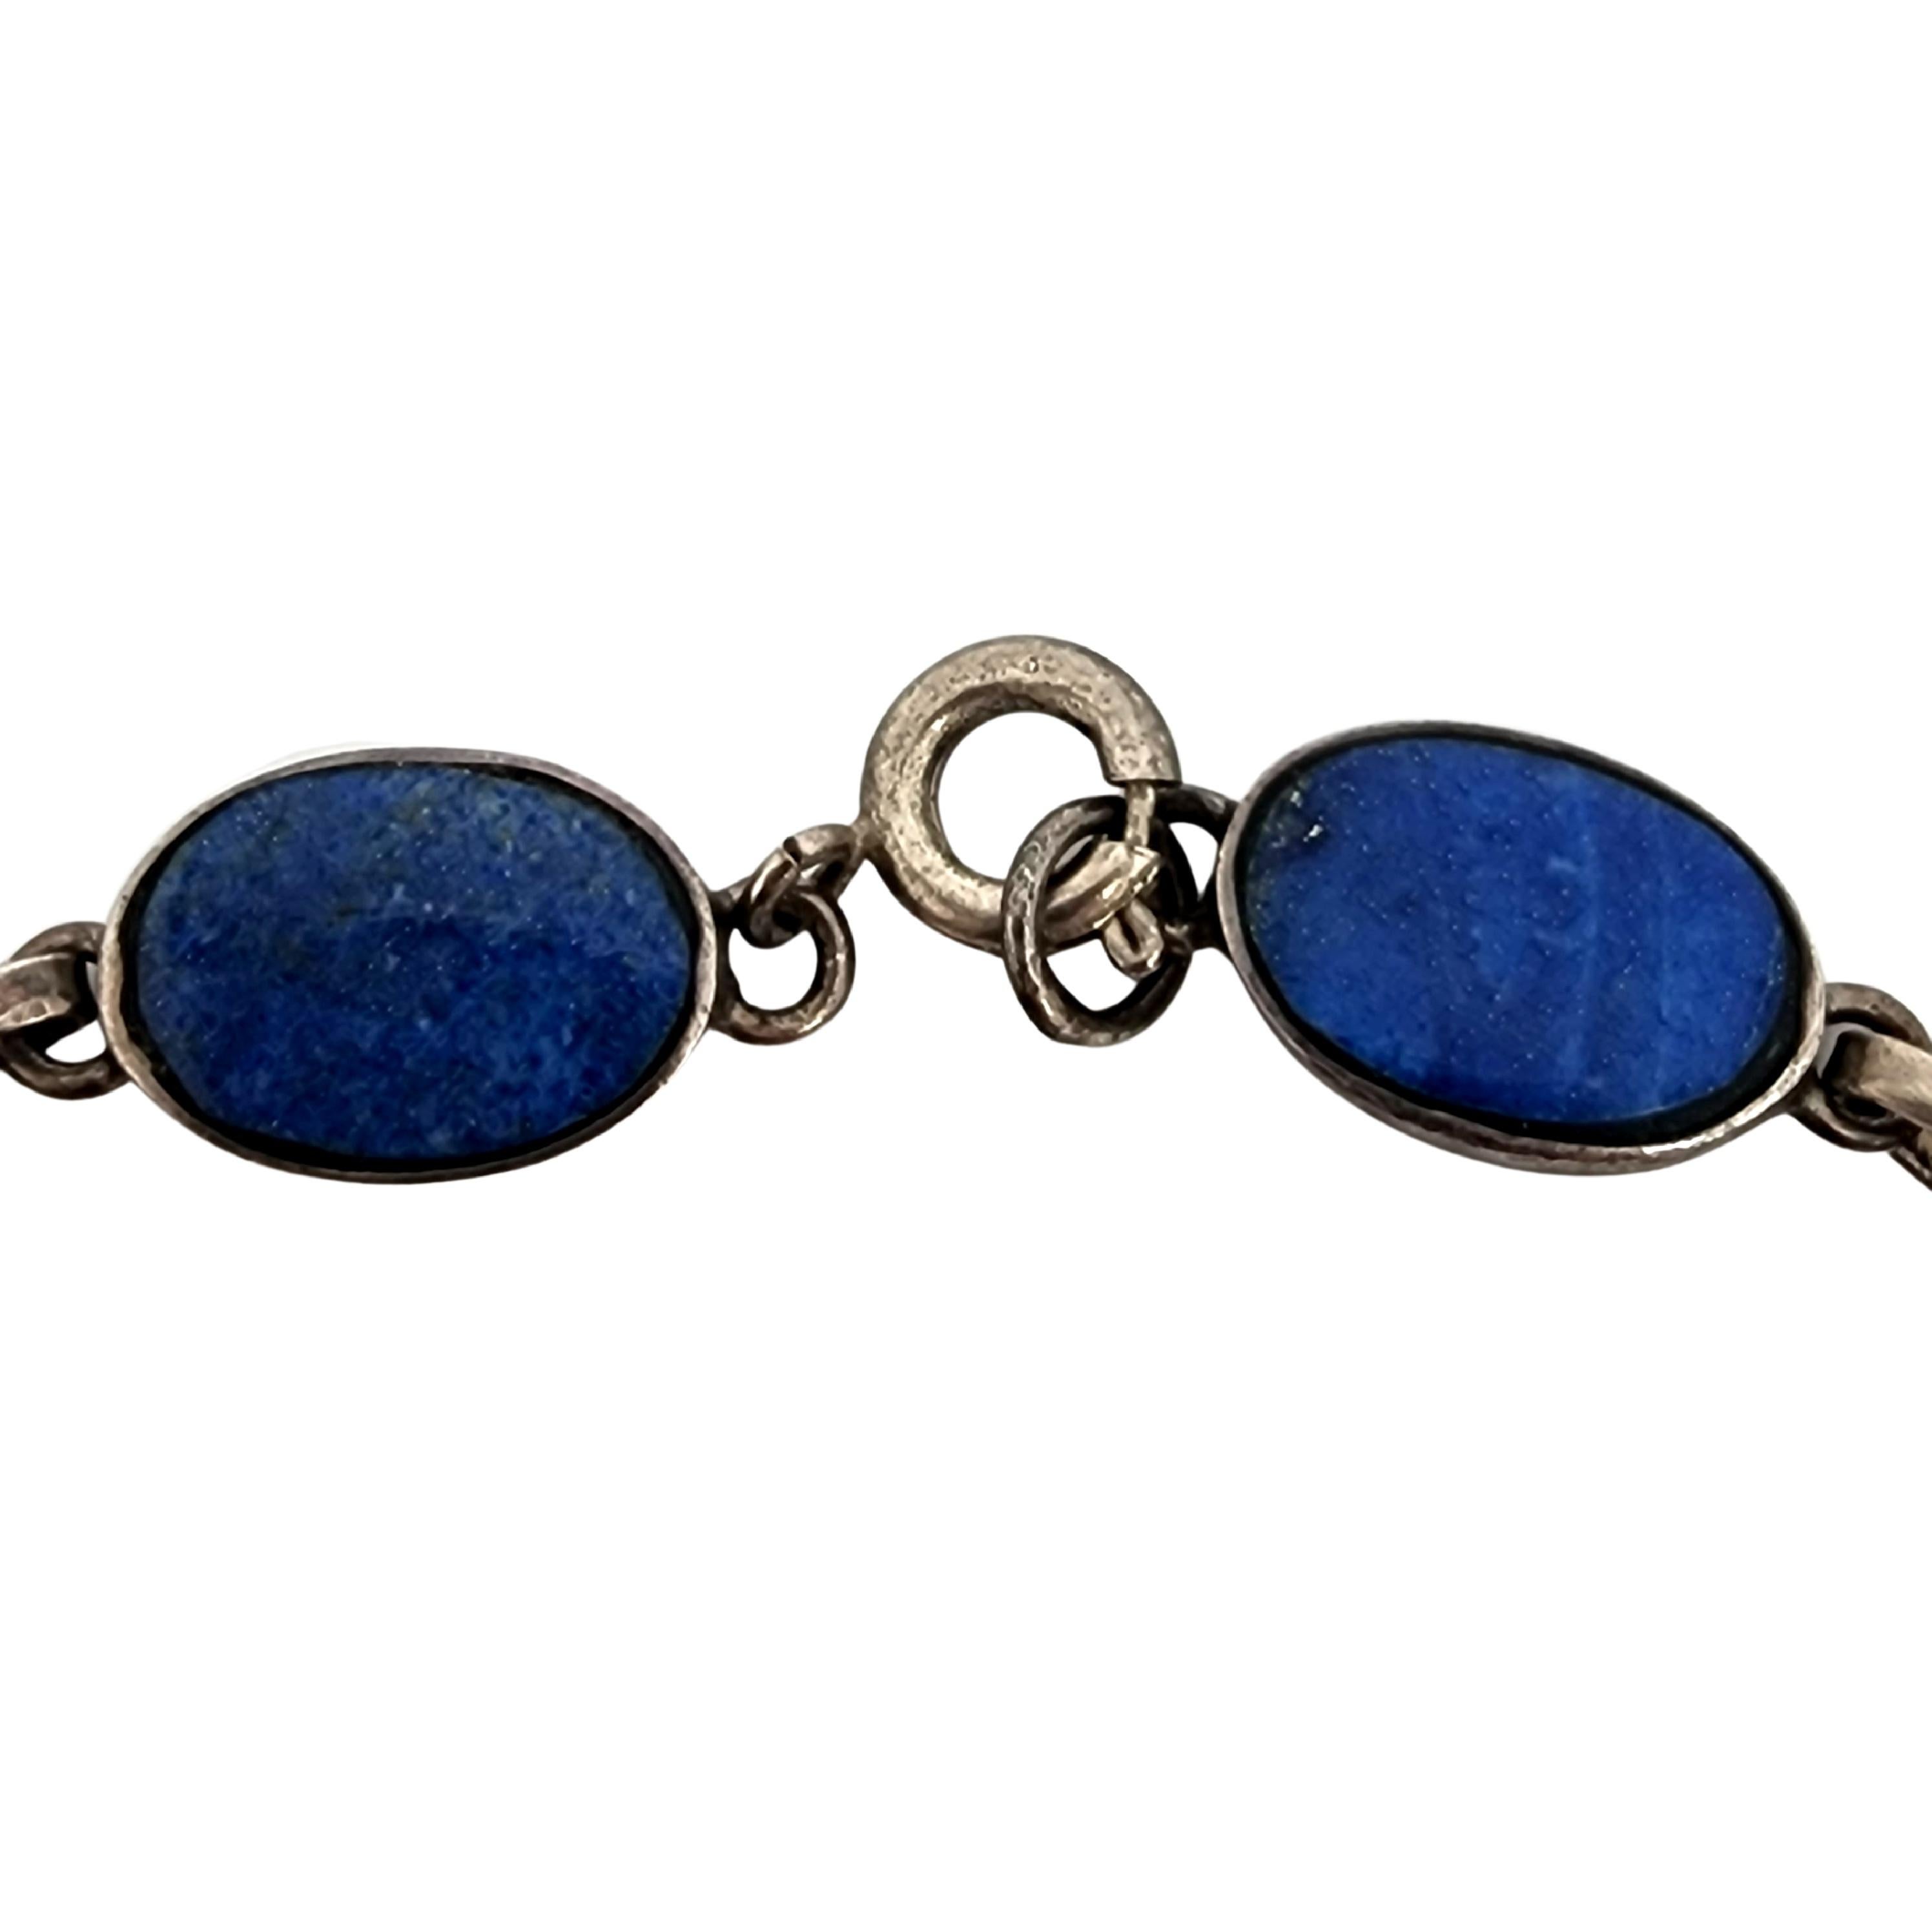 950 Silver Lapis Lazuli Pyramid Necklace & Bracelet Set #13370 For Sale 2